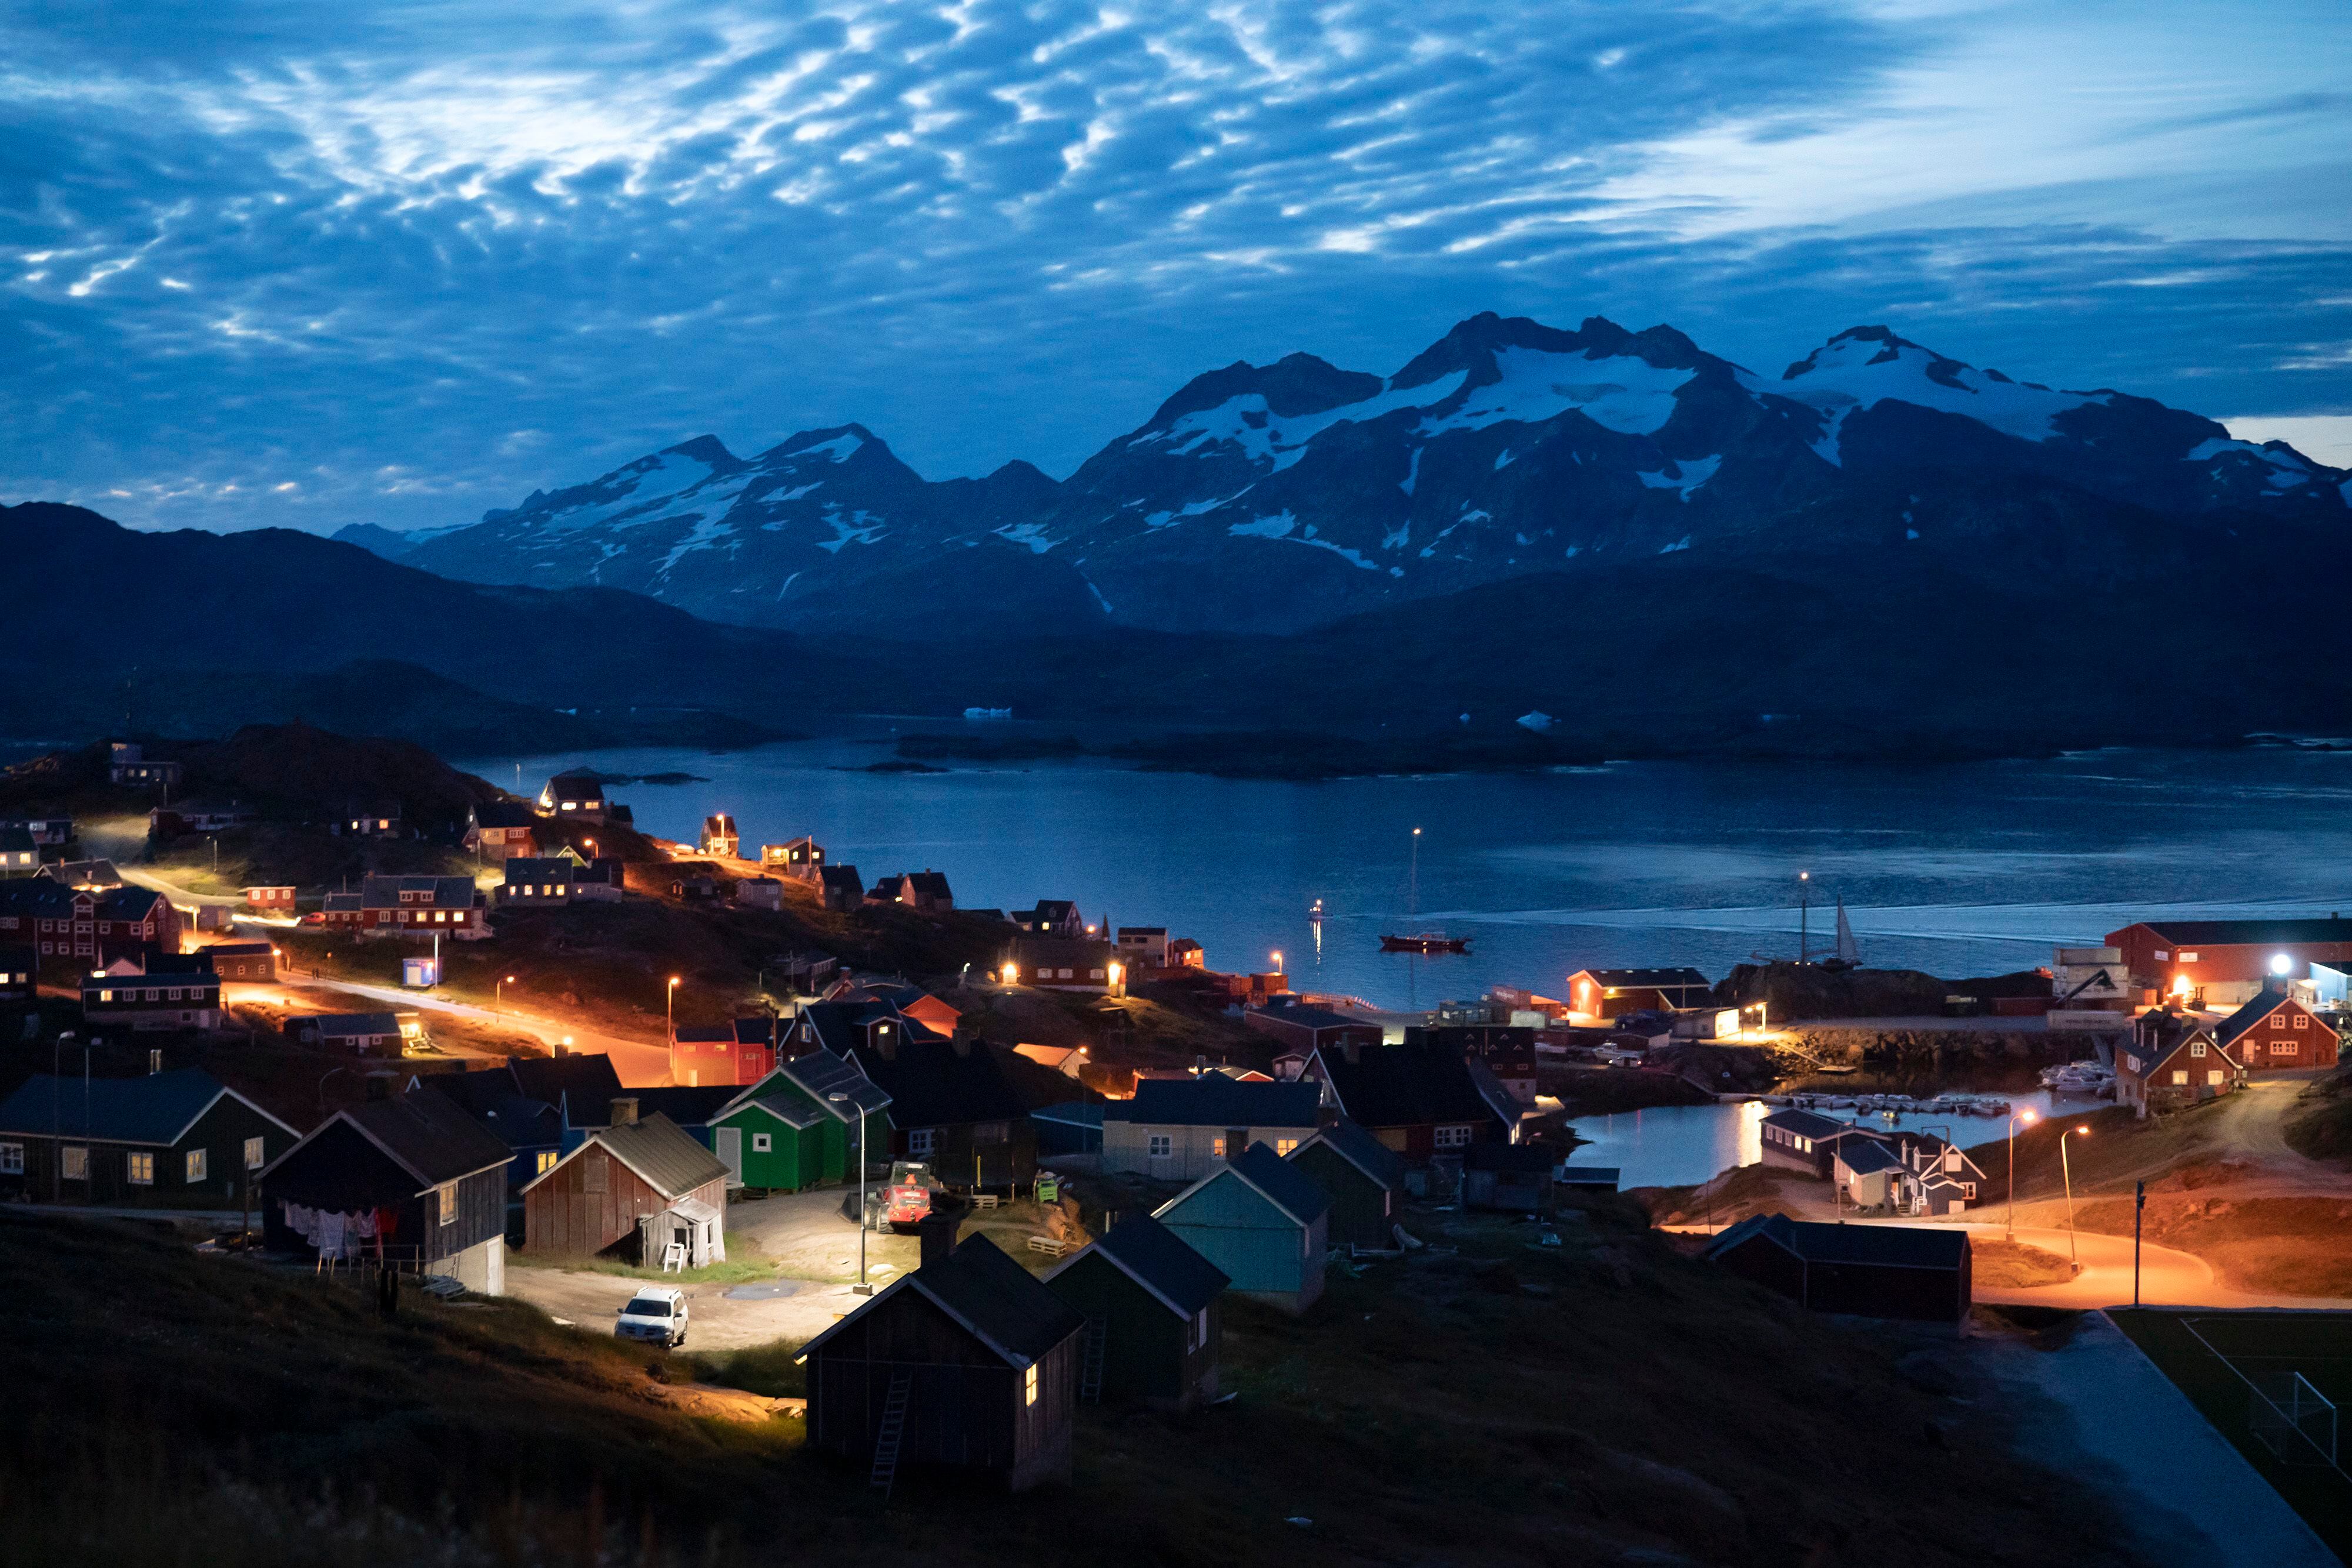 Viviendas iluminadas tras el anochecer en Tasiilaq, Groenlandia, el viernes 16 de agosto de 2019. (AP)